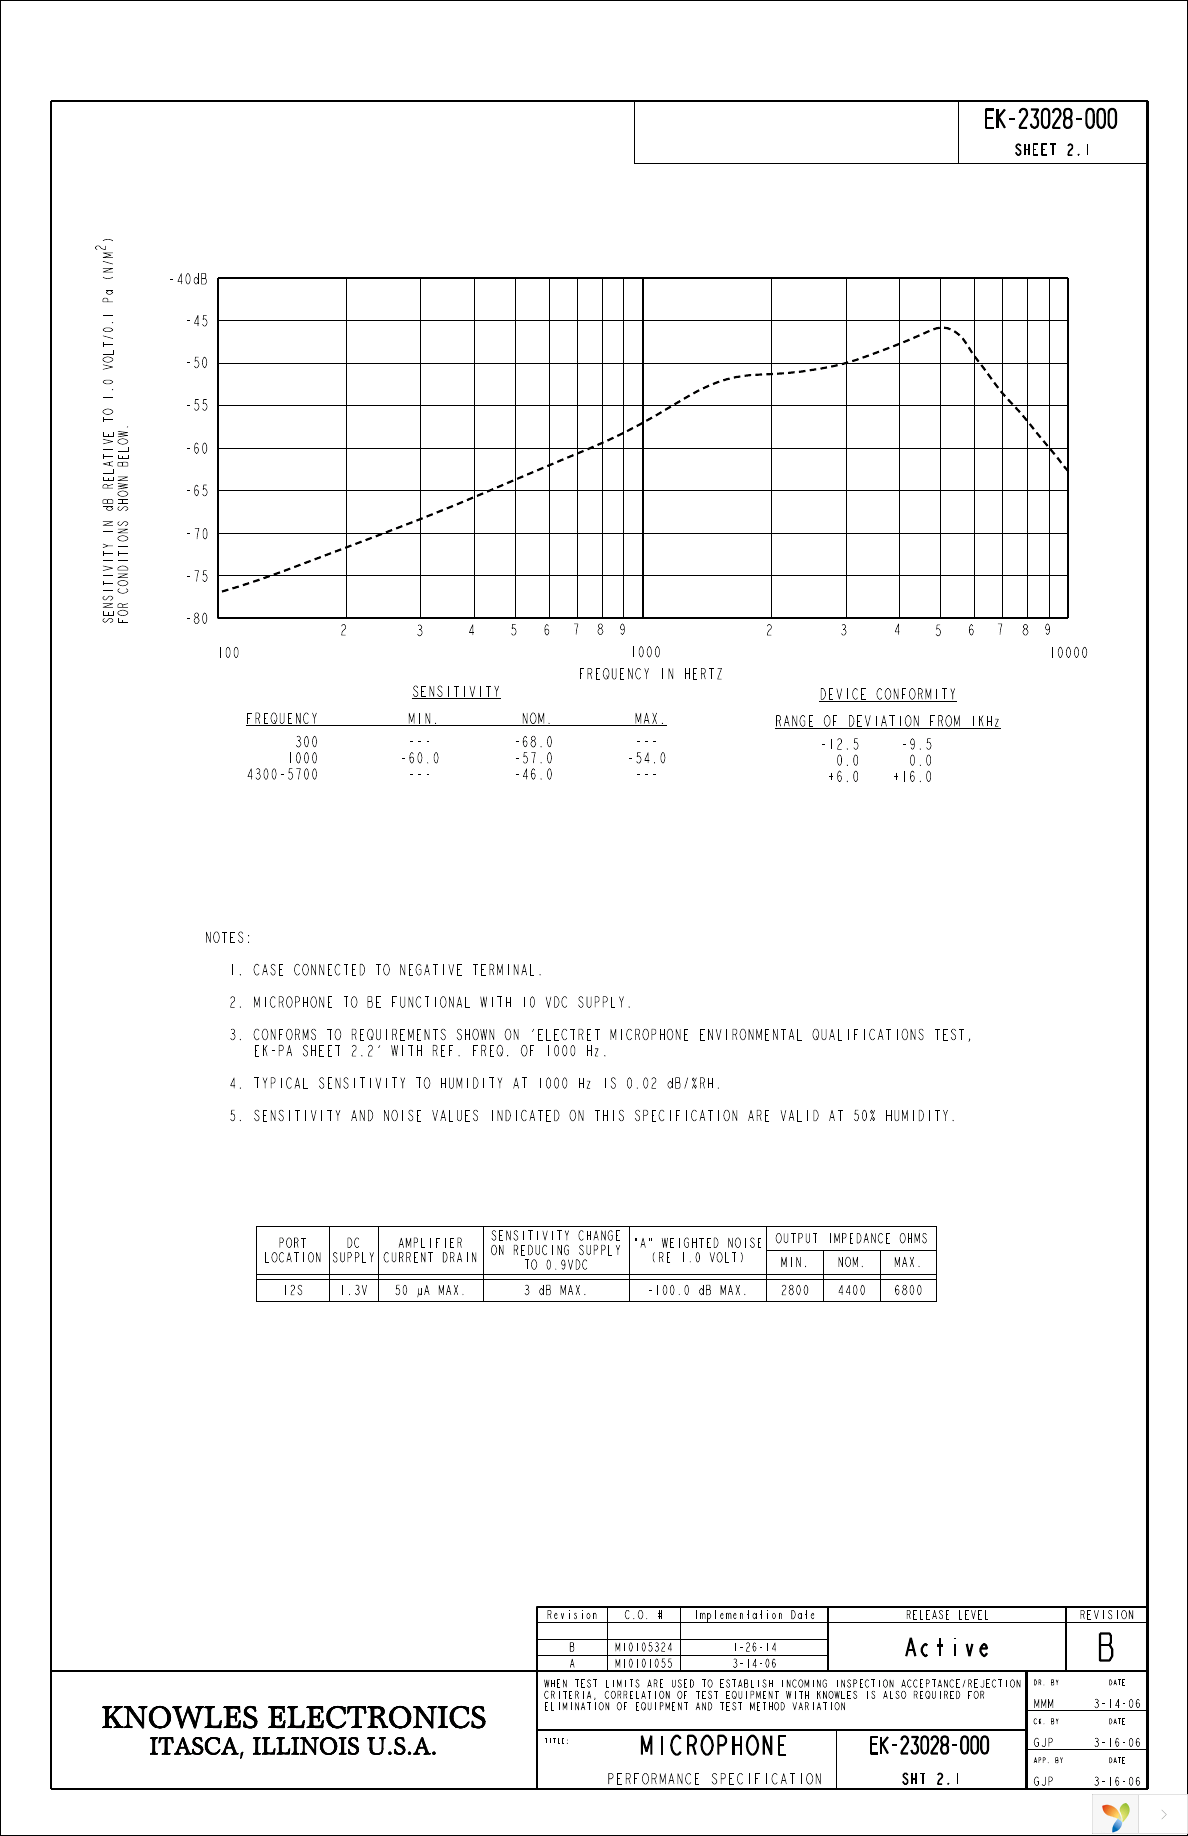 EK-23028-000 Page 2